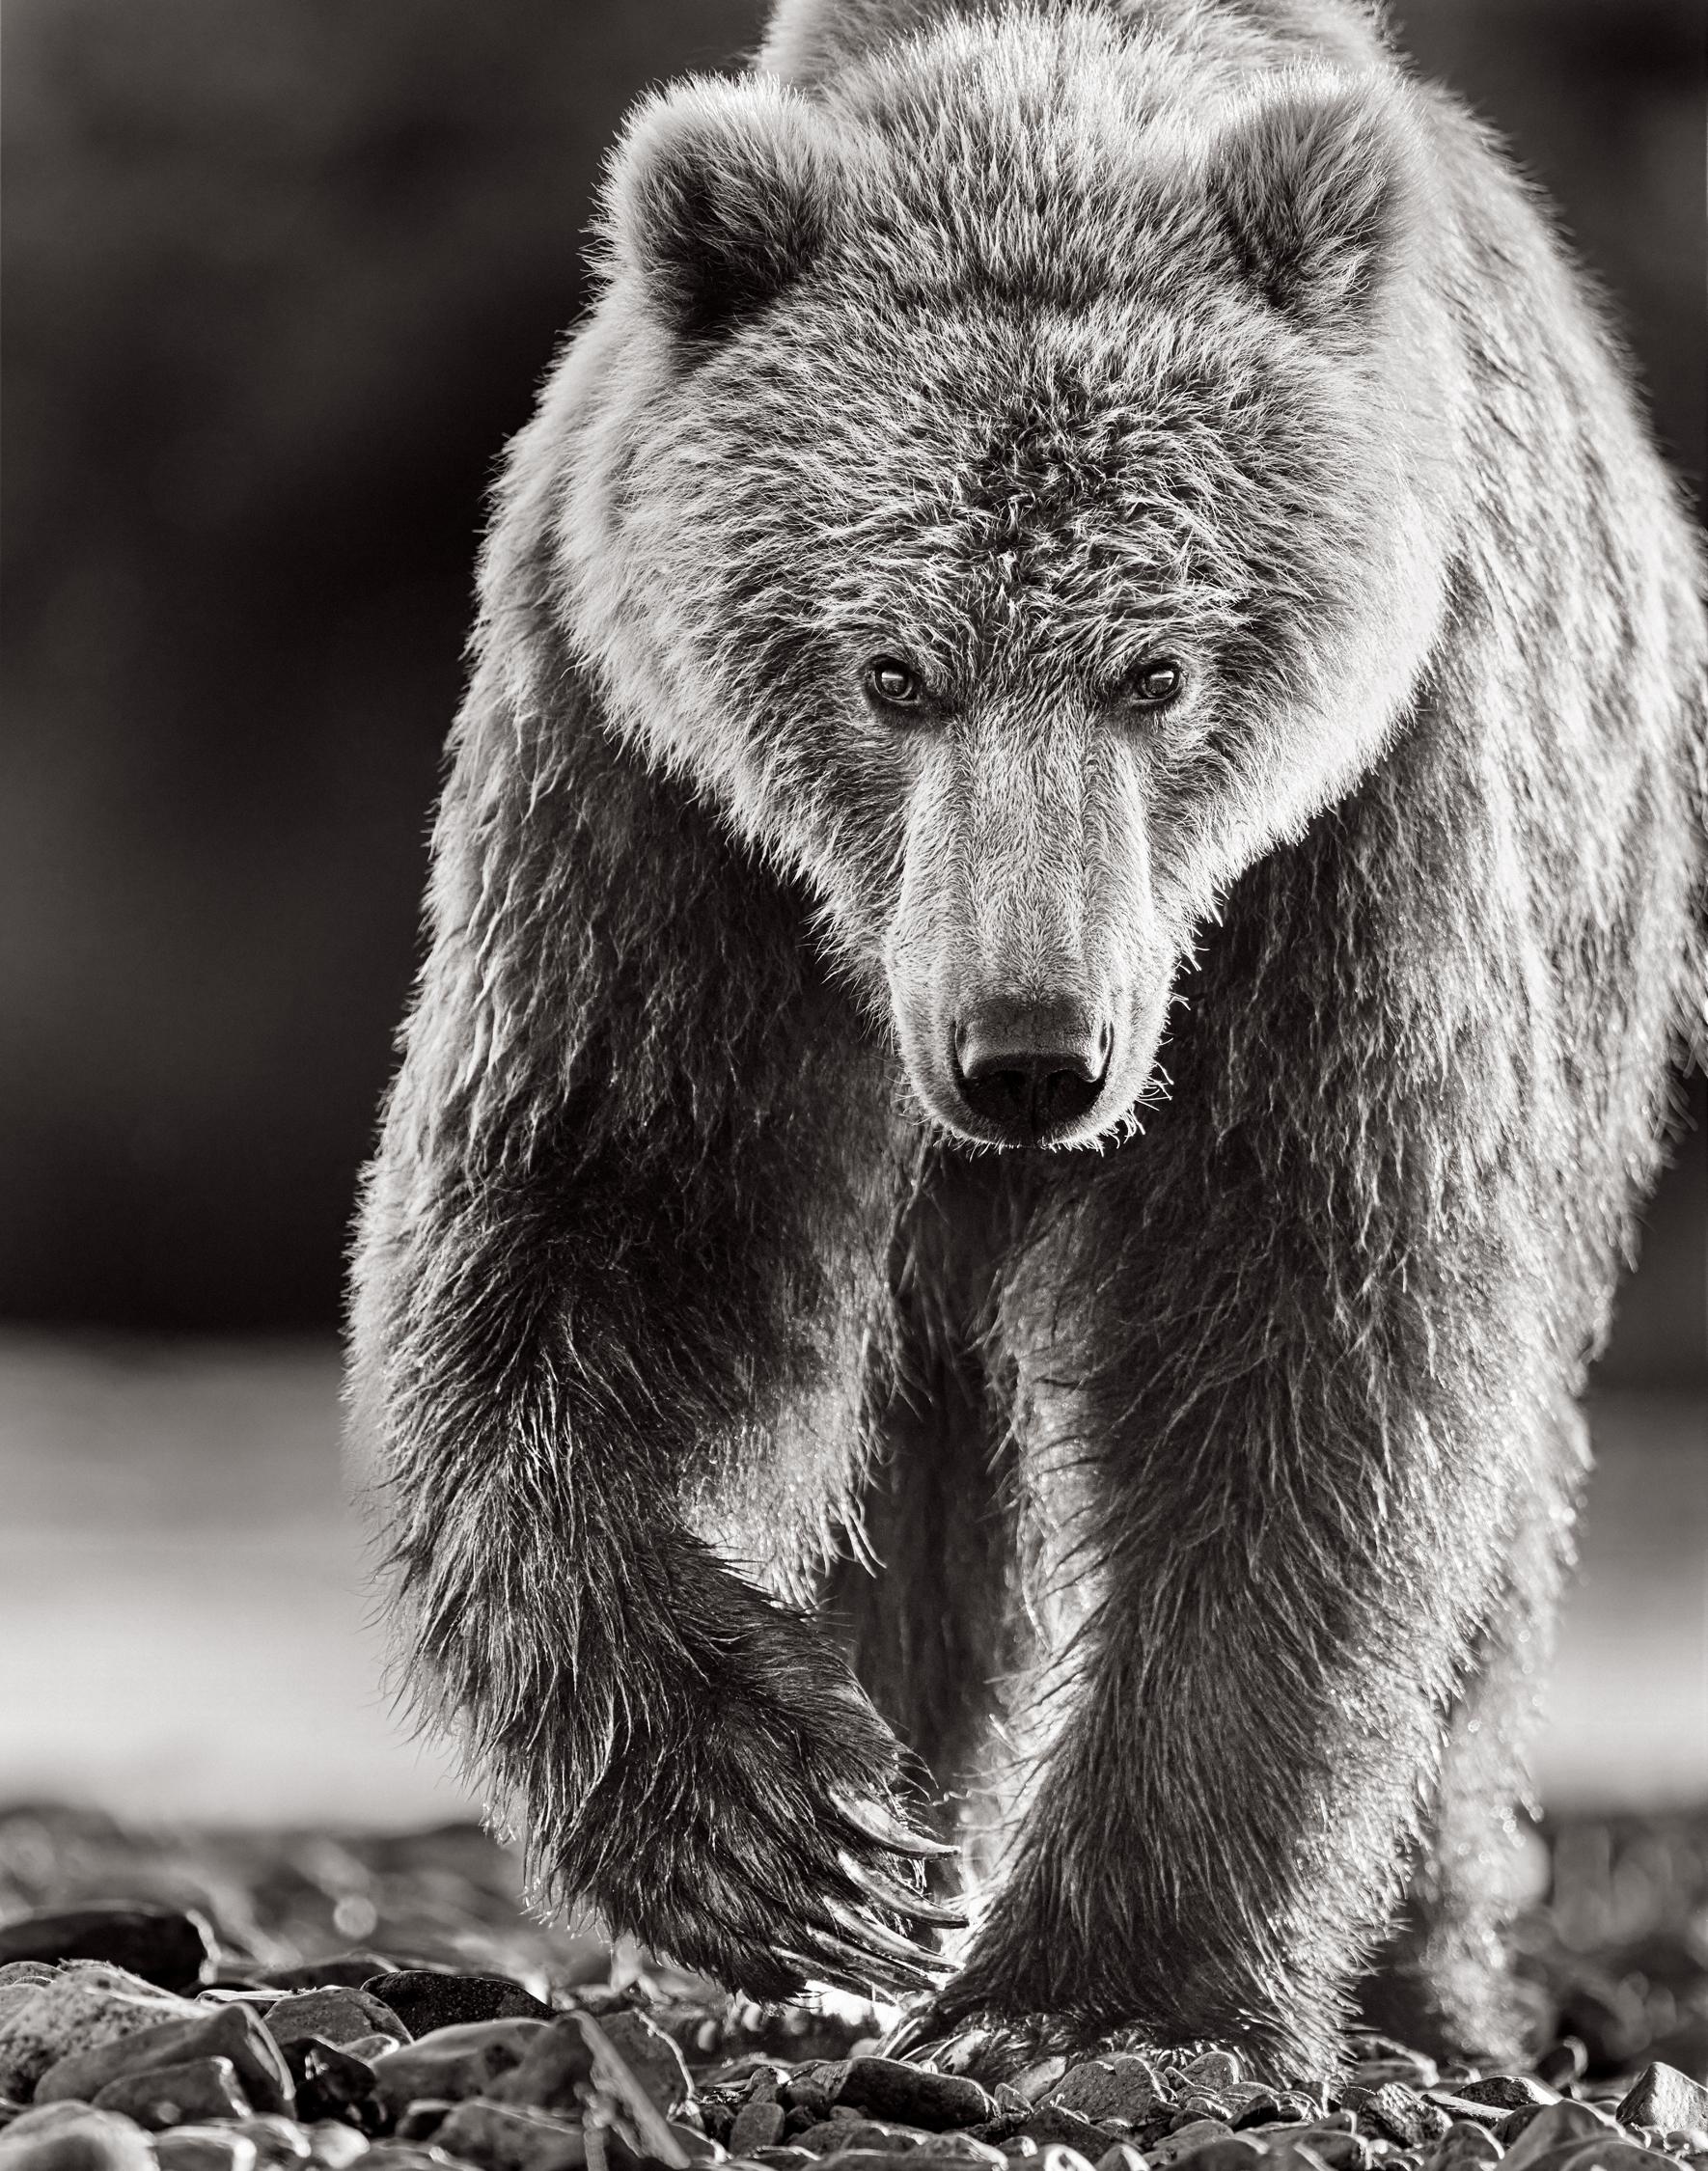 Drew Doggett Black and White Photograph – Intimes Porträt eines braunen Bären, der auf die Kamera zugeht